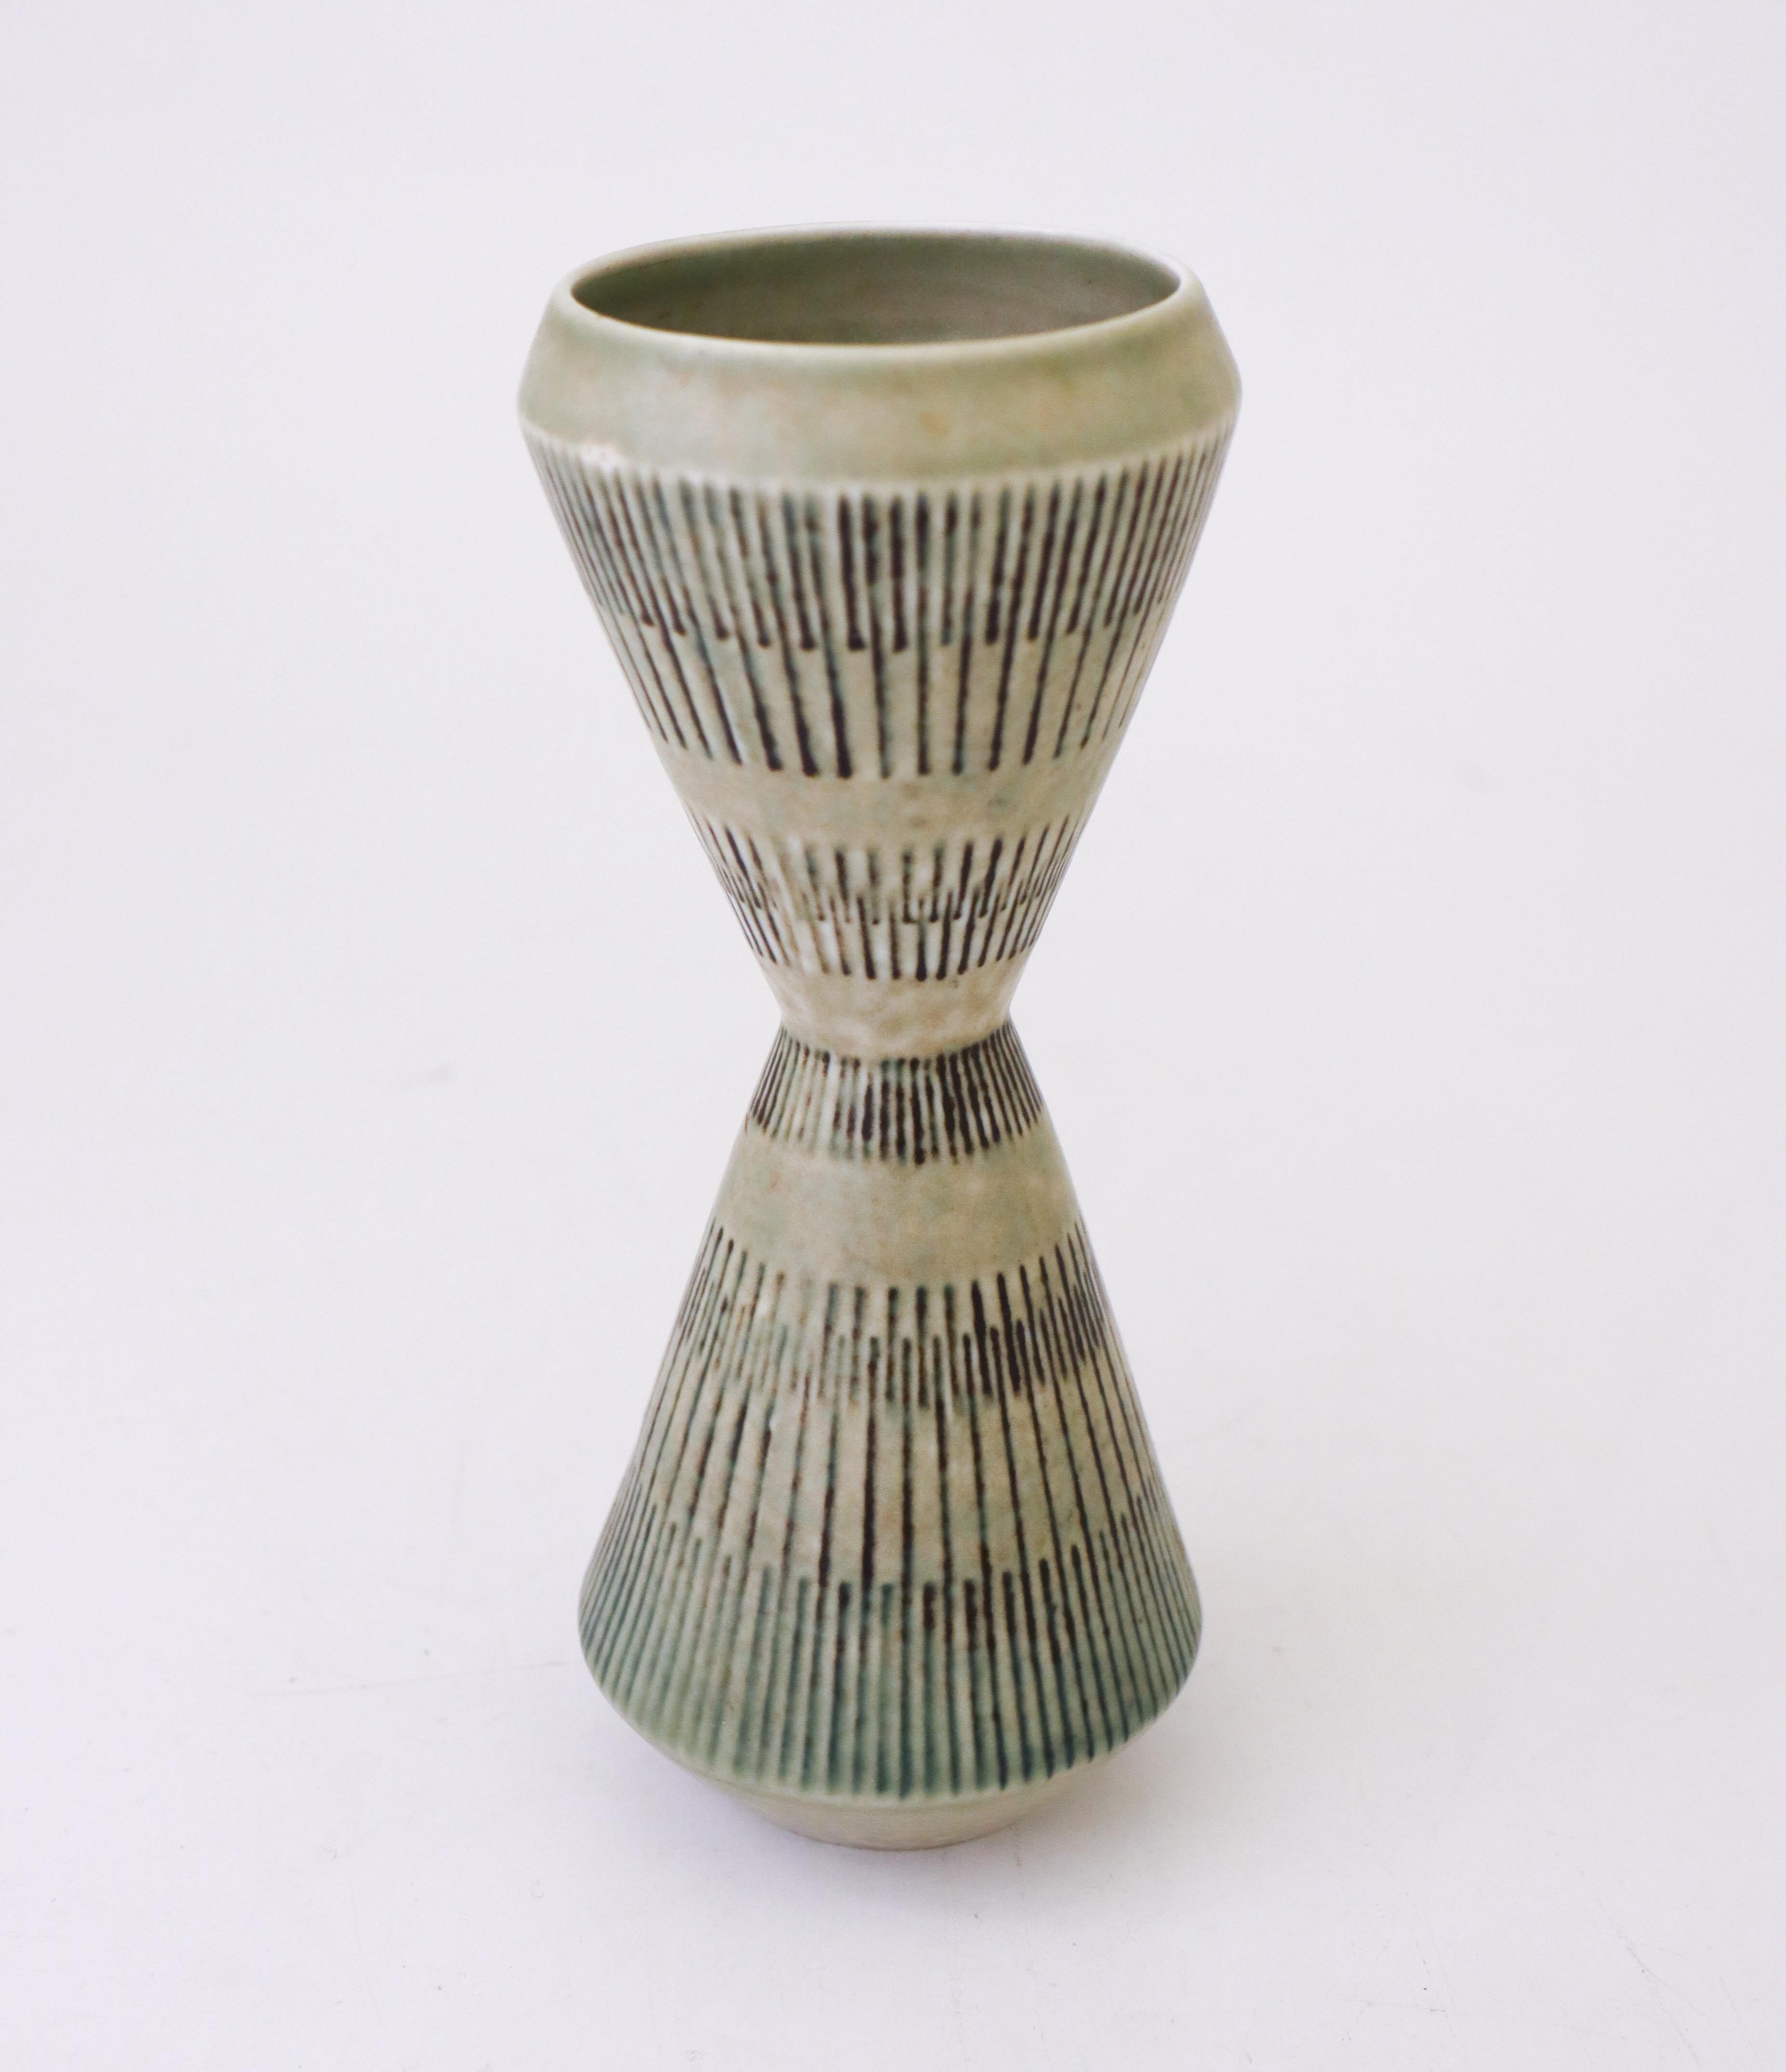 Un vase en céramique gris en forme de sablier conçu par Carl-Harry Stålhane chez Rörstrand. Le vase mesure 19,5 cm de haut et est en très bon état. Le vase est marqué comme étant de 2ème qualité. 

Carl-Harry Stålhane est l'un des grands noms de